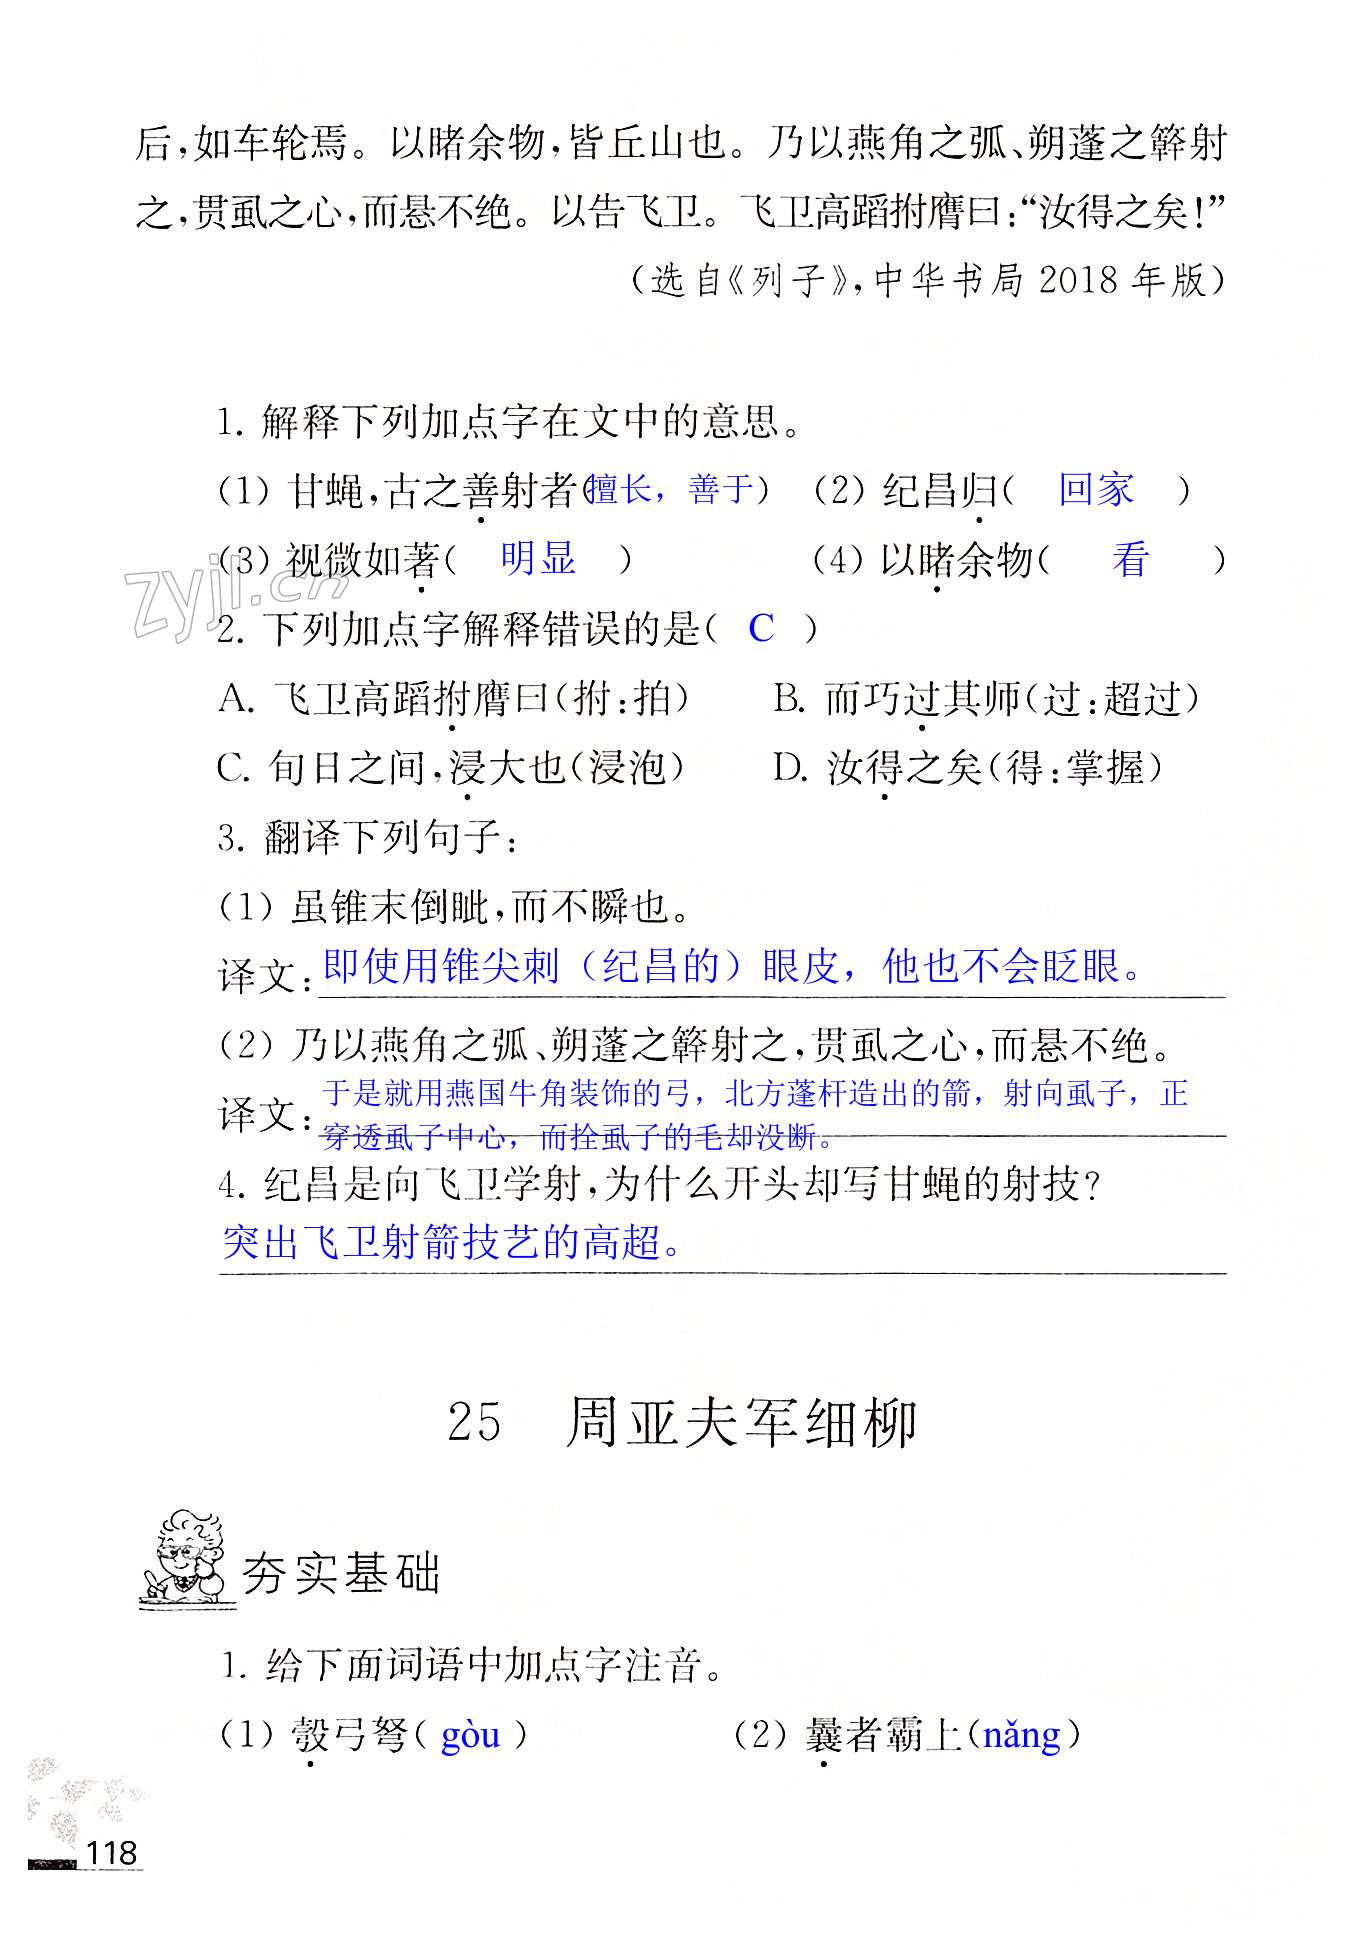 25.周亚夫军细柳 - 第118页